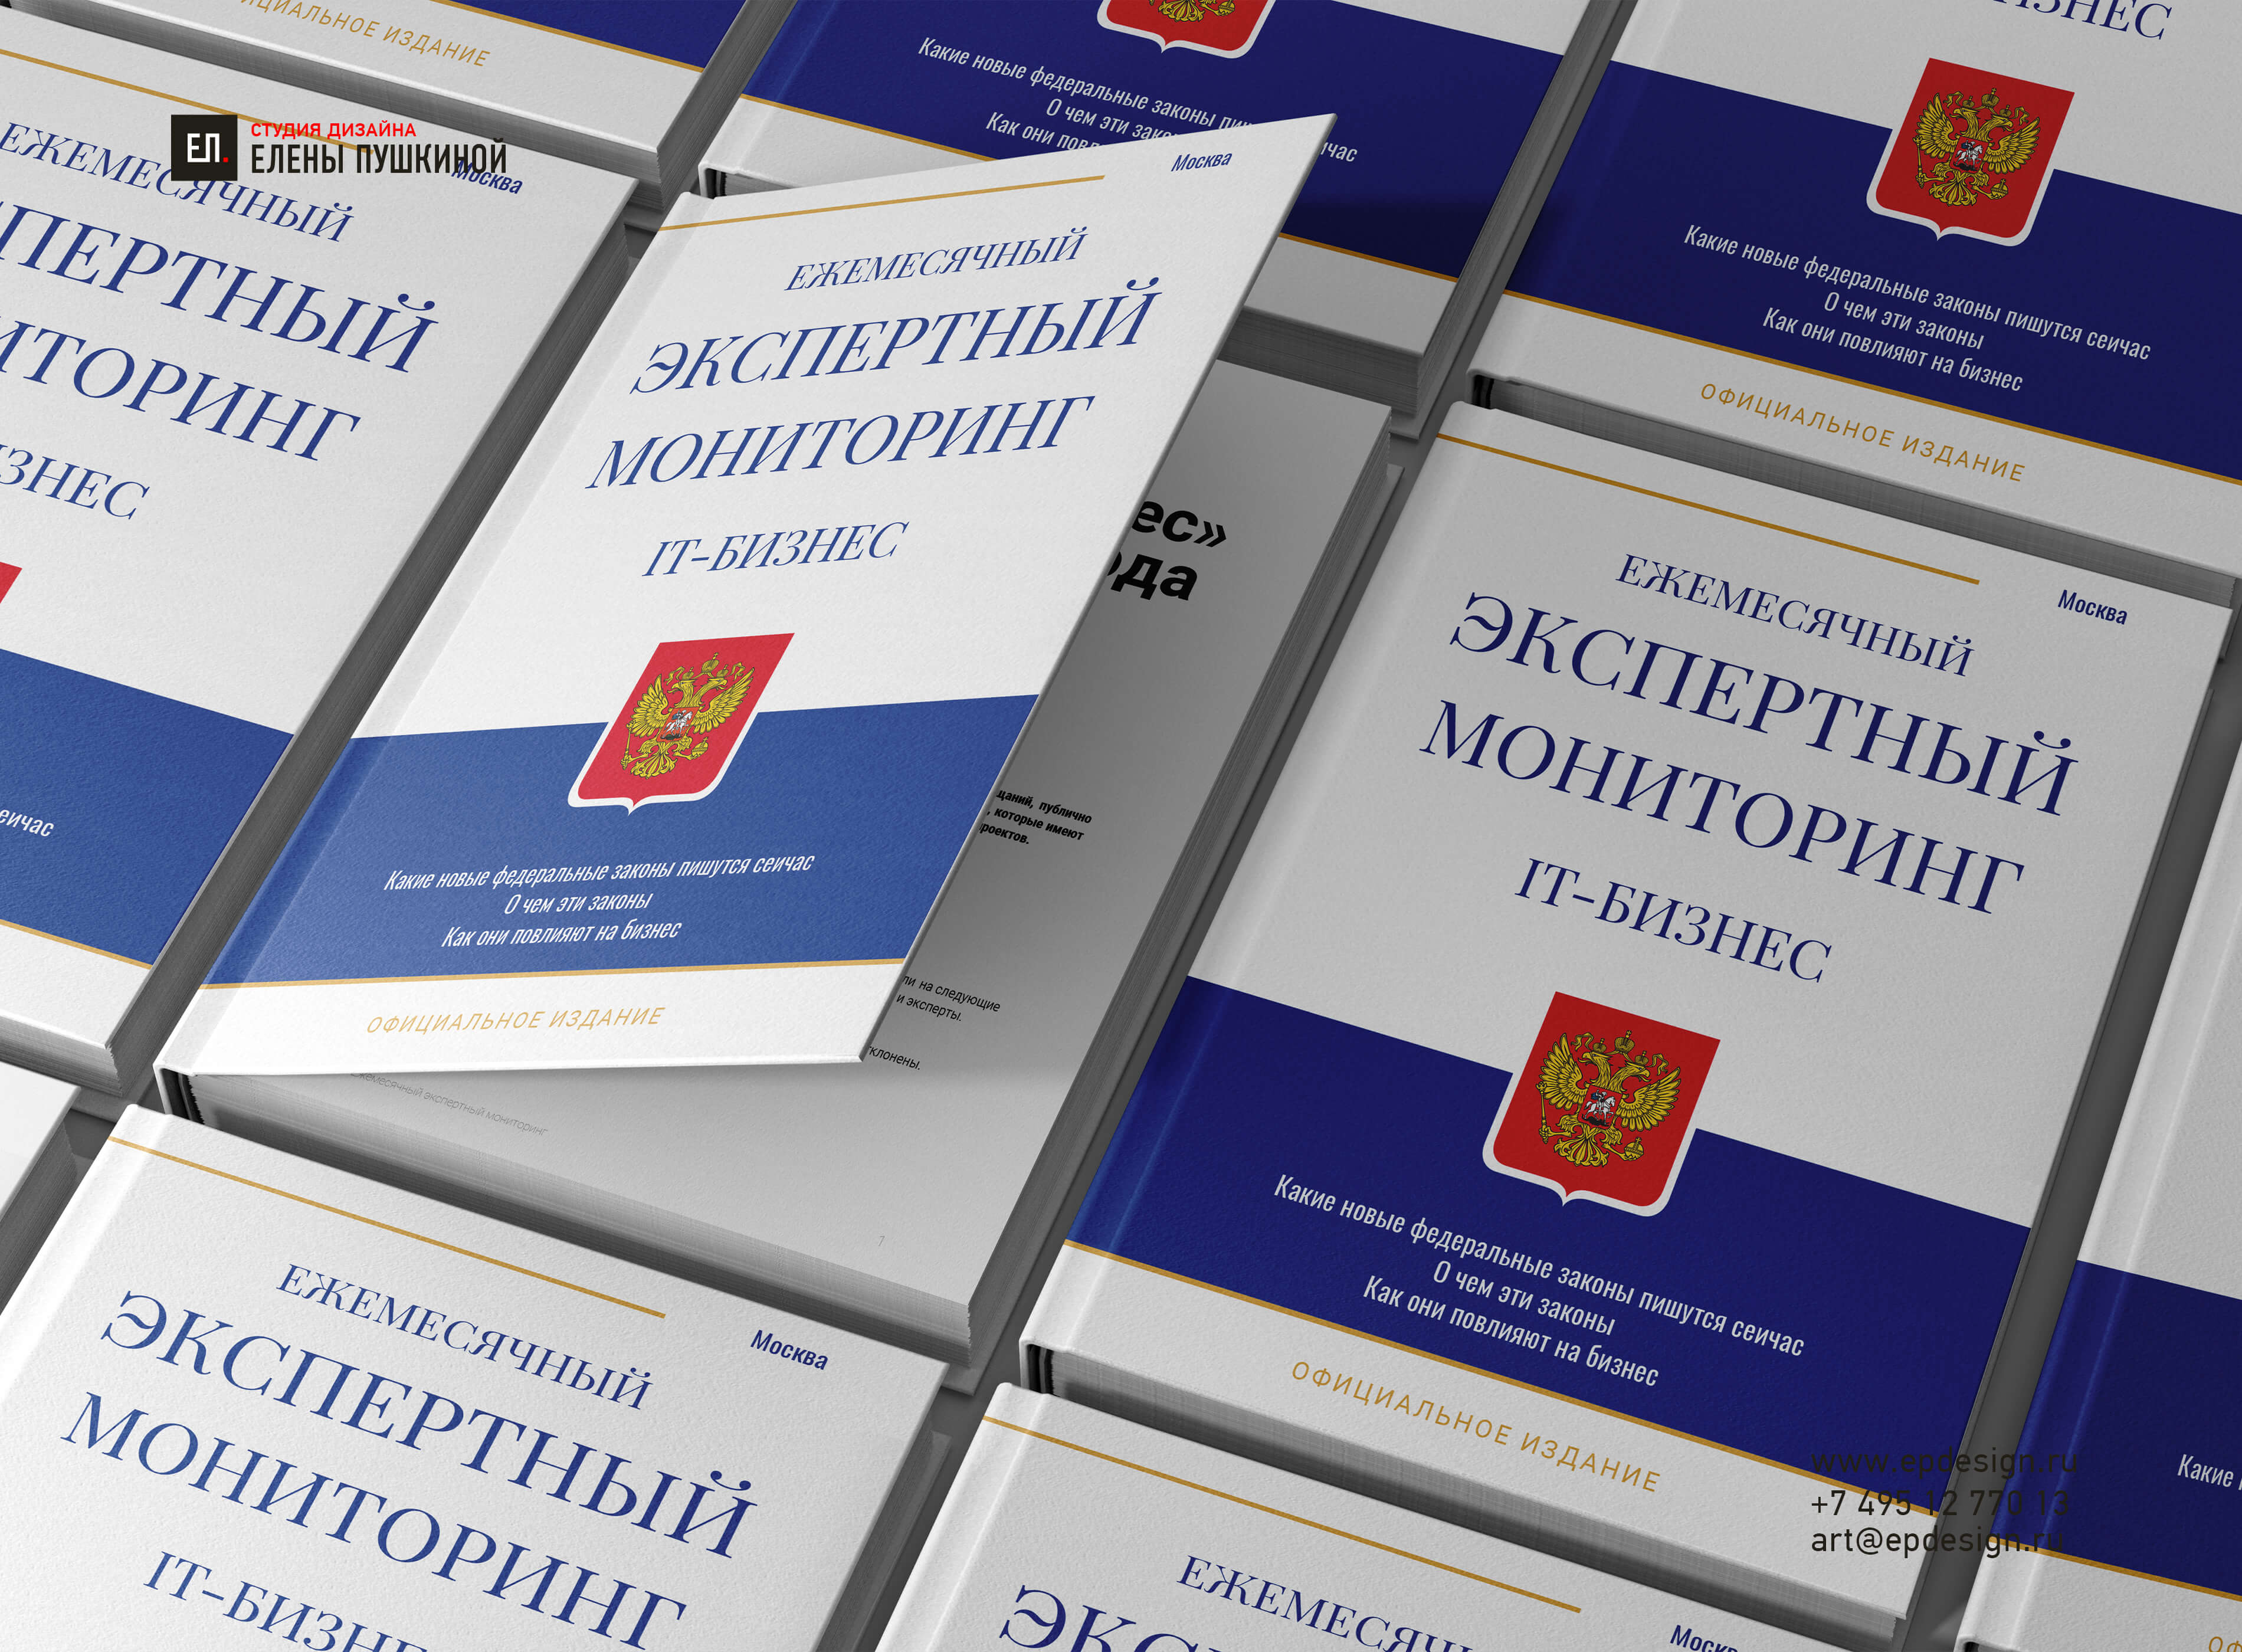 Книга «Экспертный мониторинг IT-бизнеса», Леонид Агронов Создание книг Портфолио